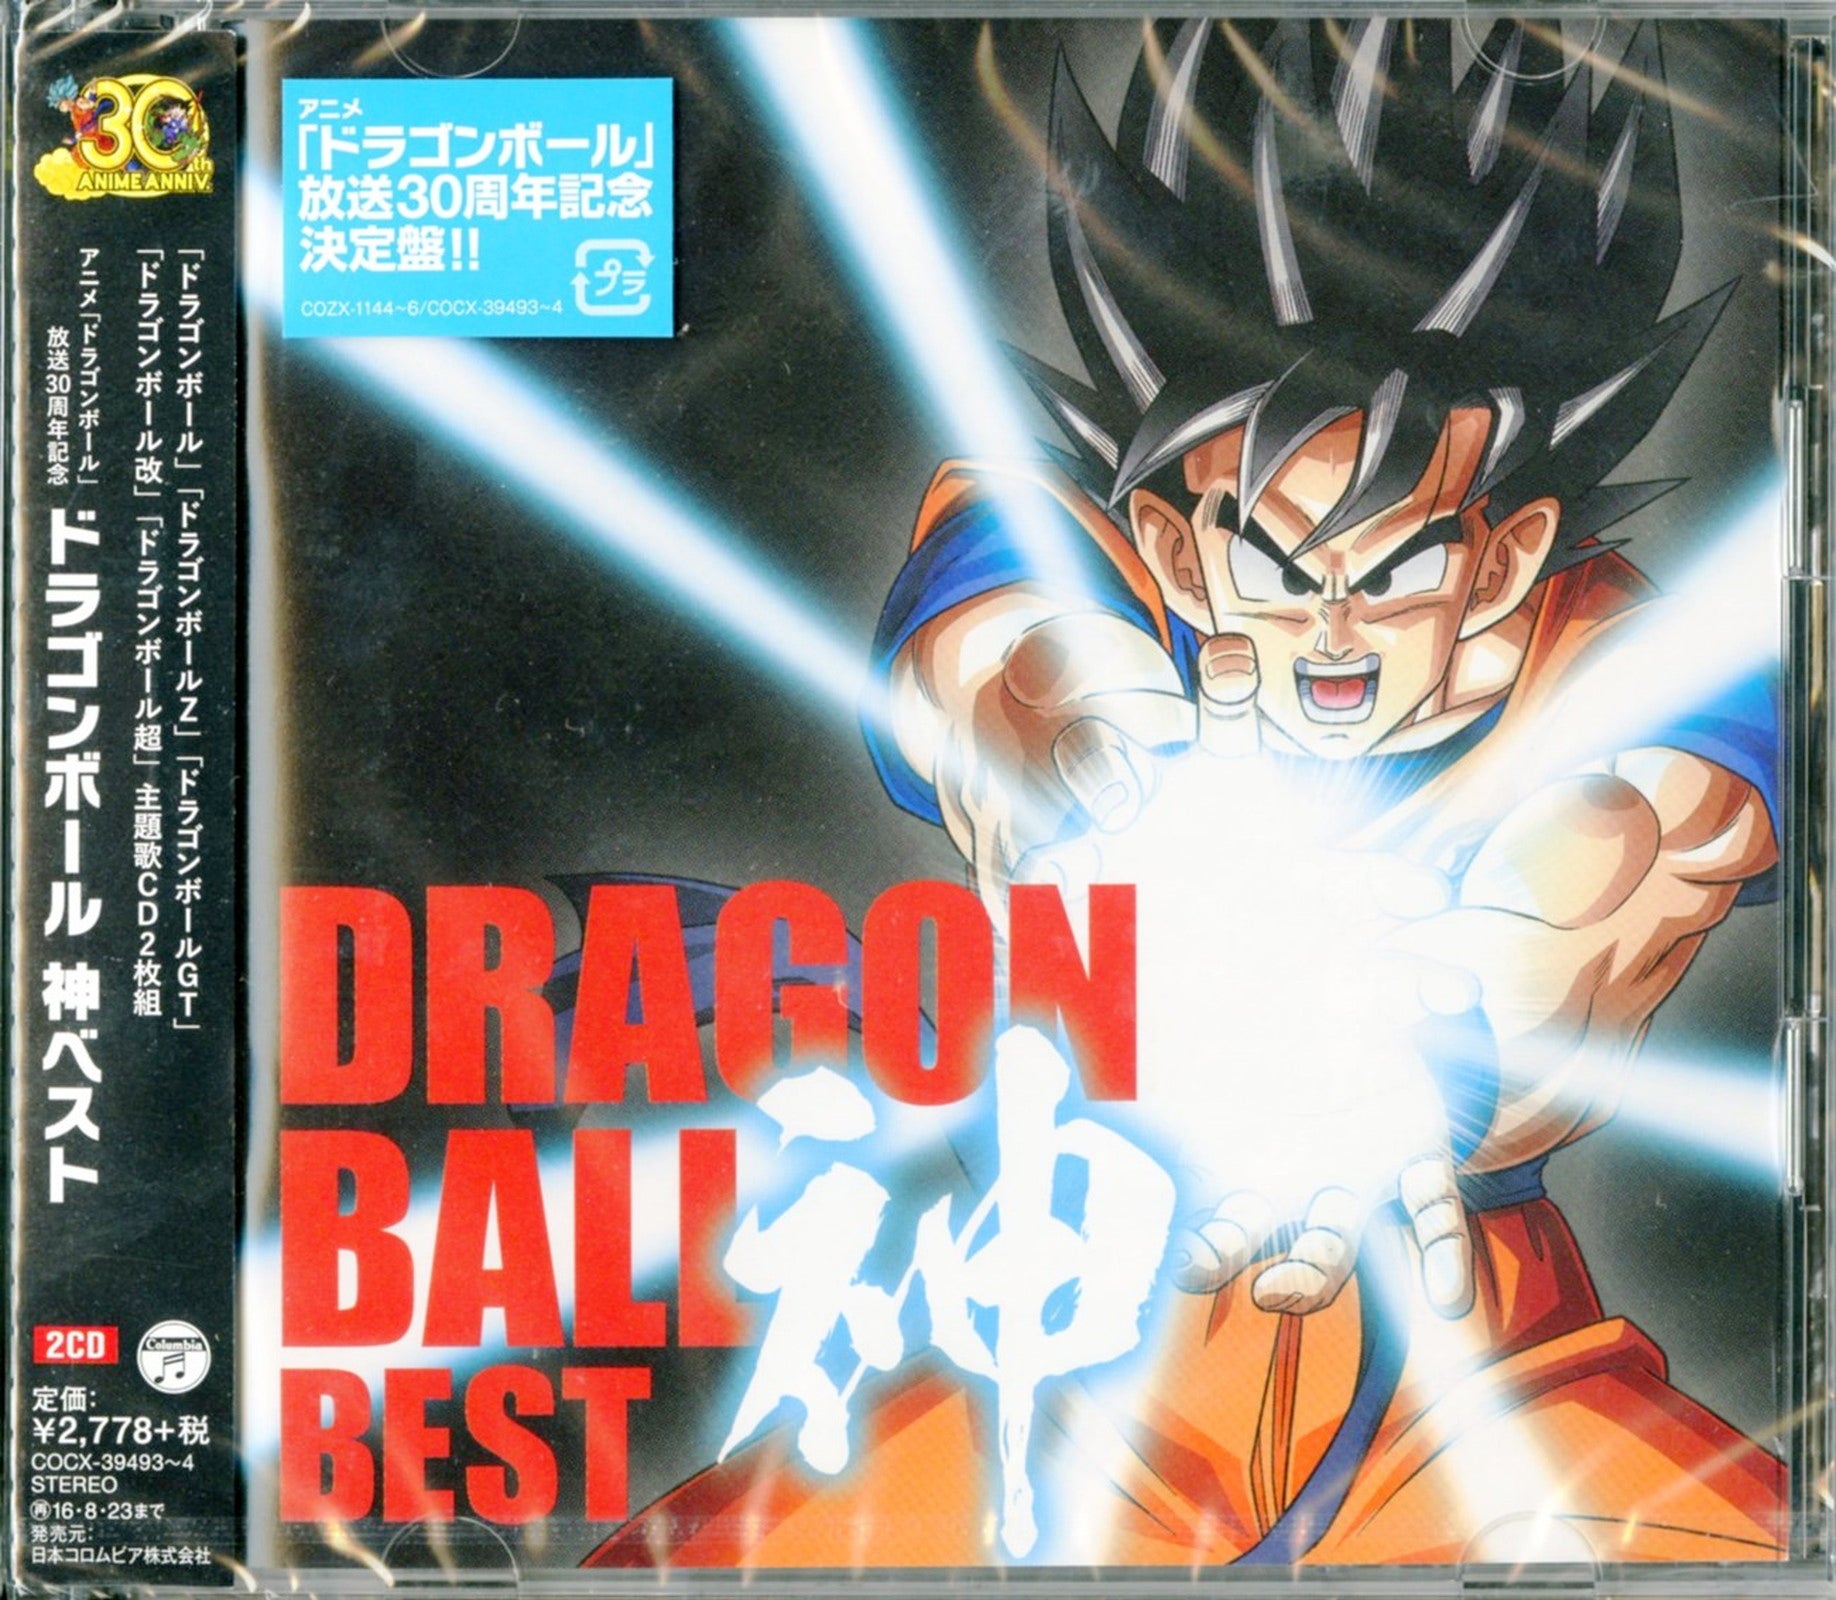 CLARIM DIÁRIO: DRAGON BALL Z: BATALHA DOS DEUSES arrecadou US $ 18Milhões  no Japão, duas vezes mais do Dragon Ball Evolution nos EUA.